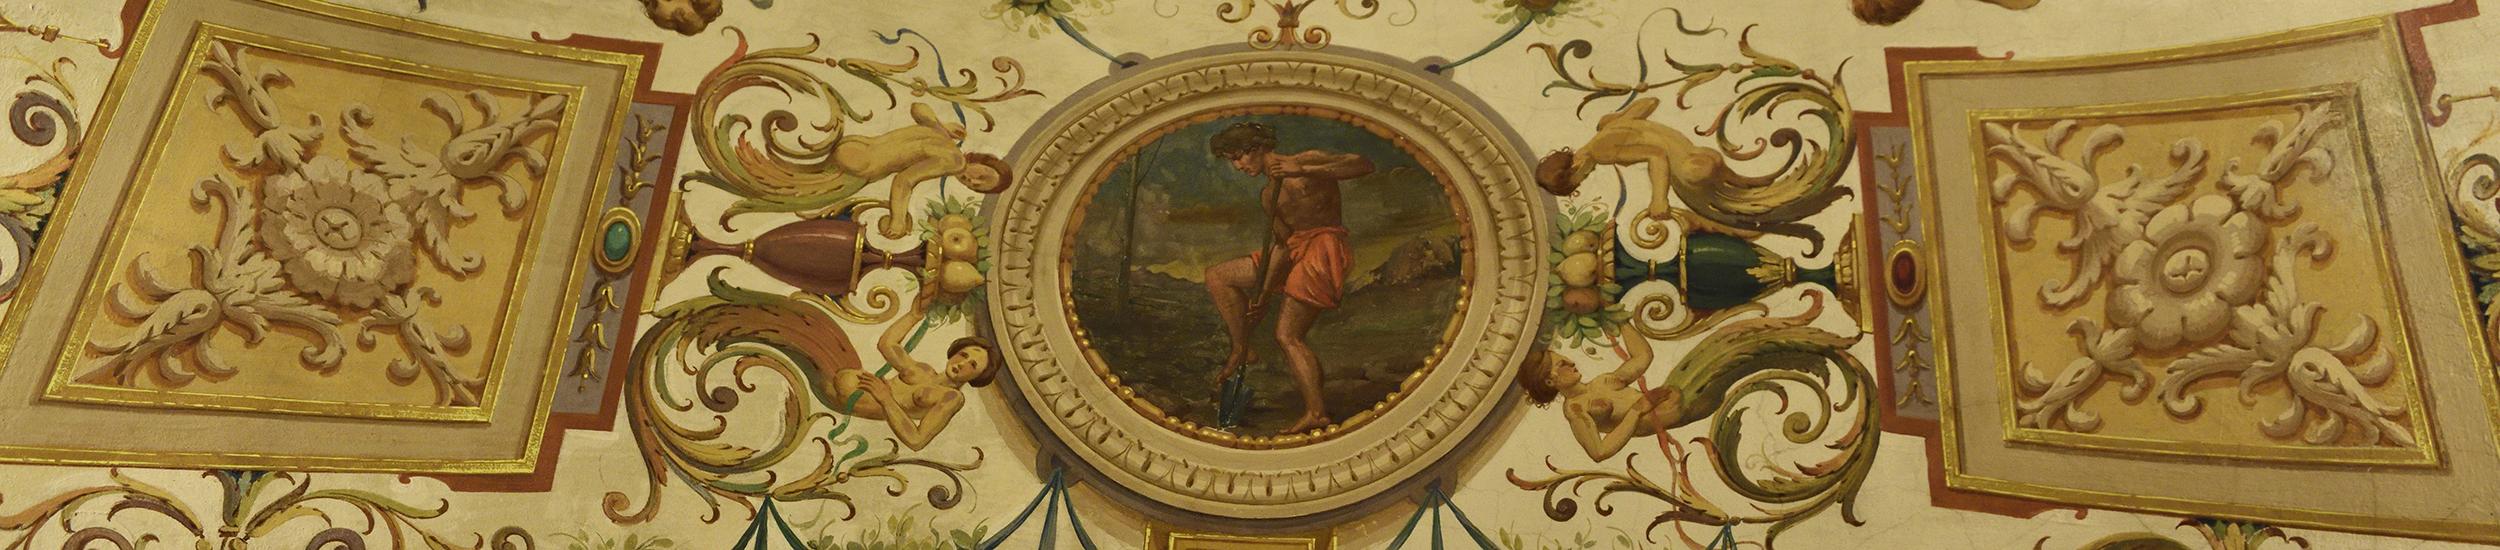 Fondazione Carisbo affreschi